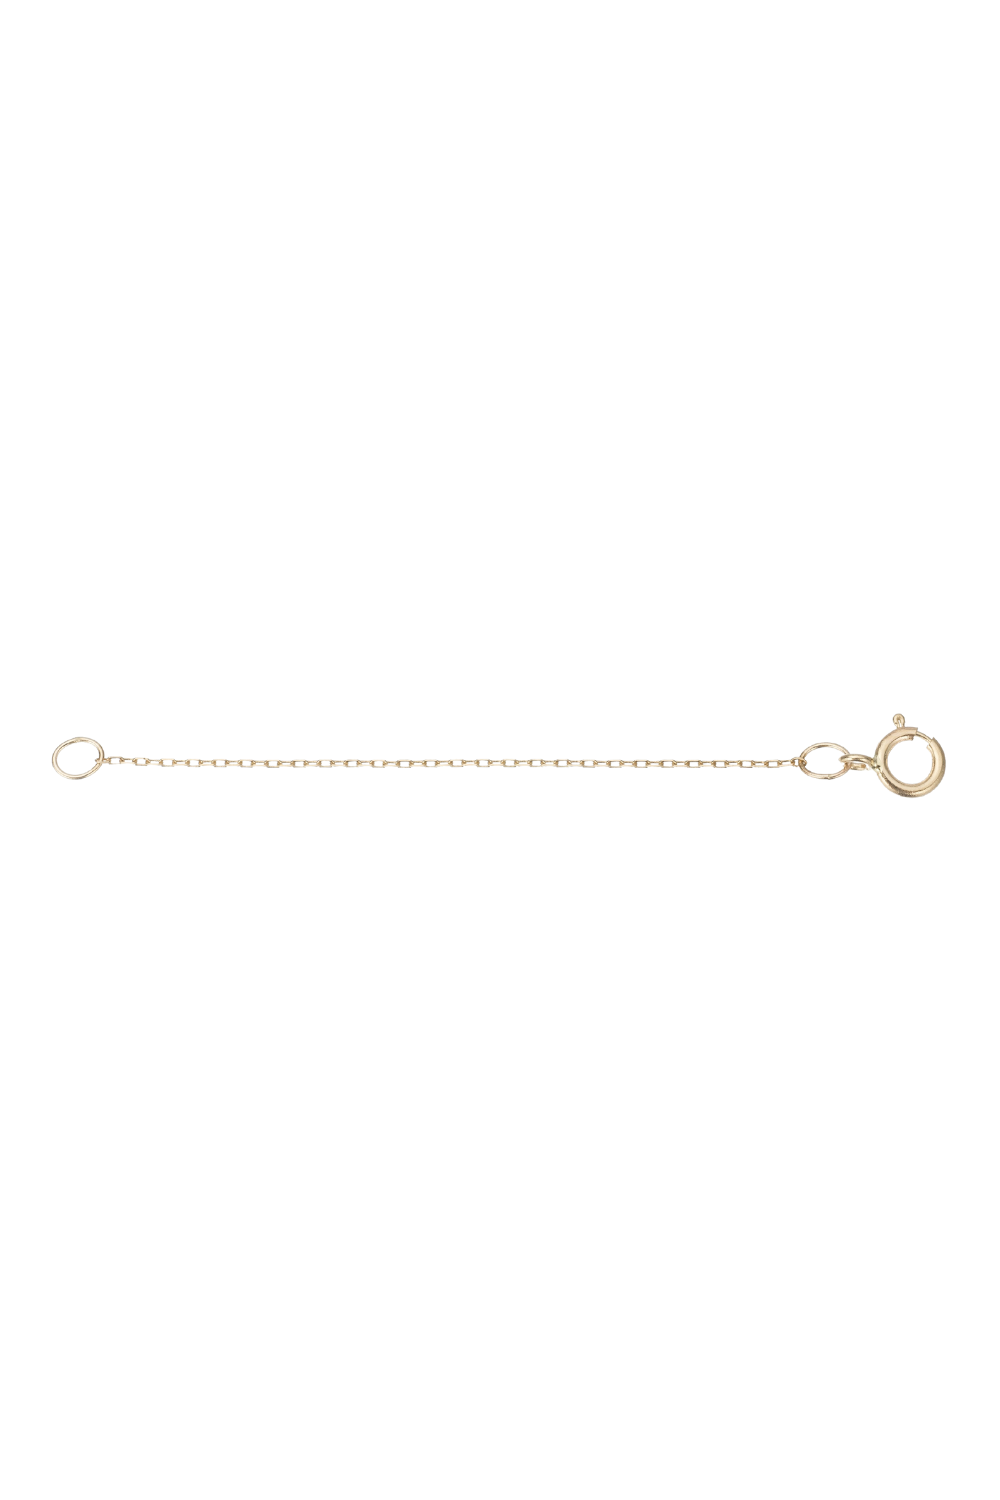 Adina Reyter 14k Yellow Gold Necklace Extender – Tiare Rose